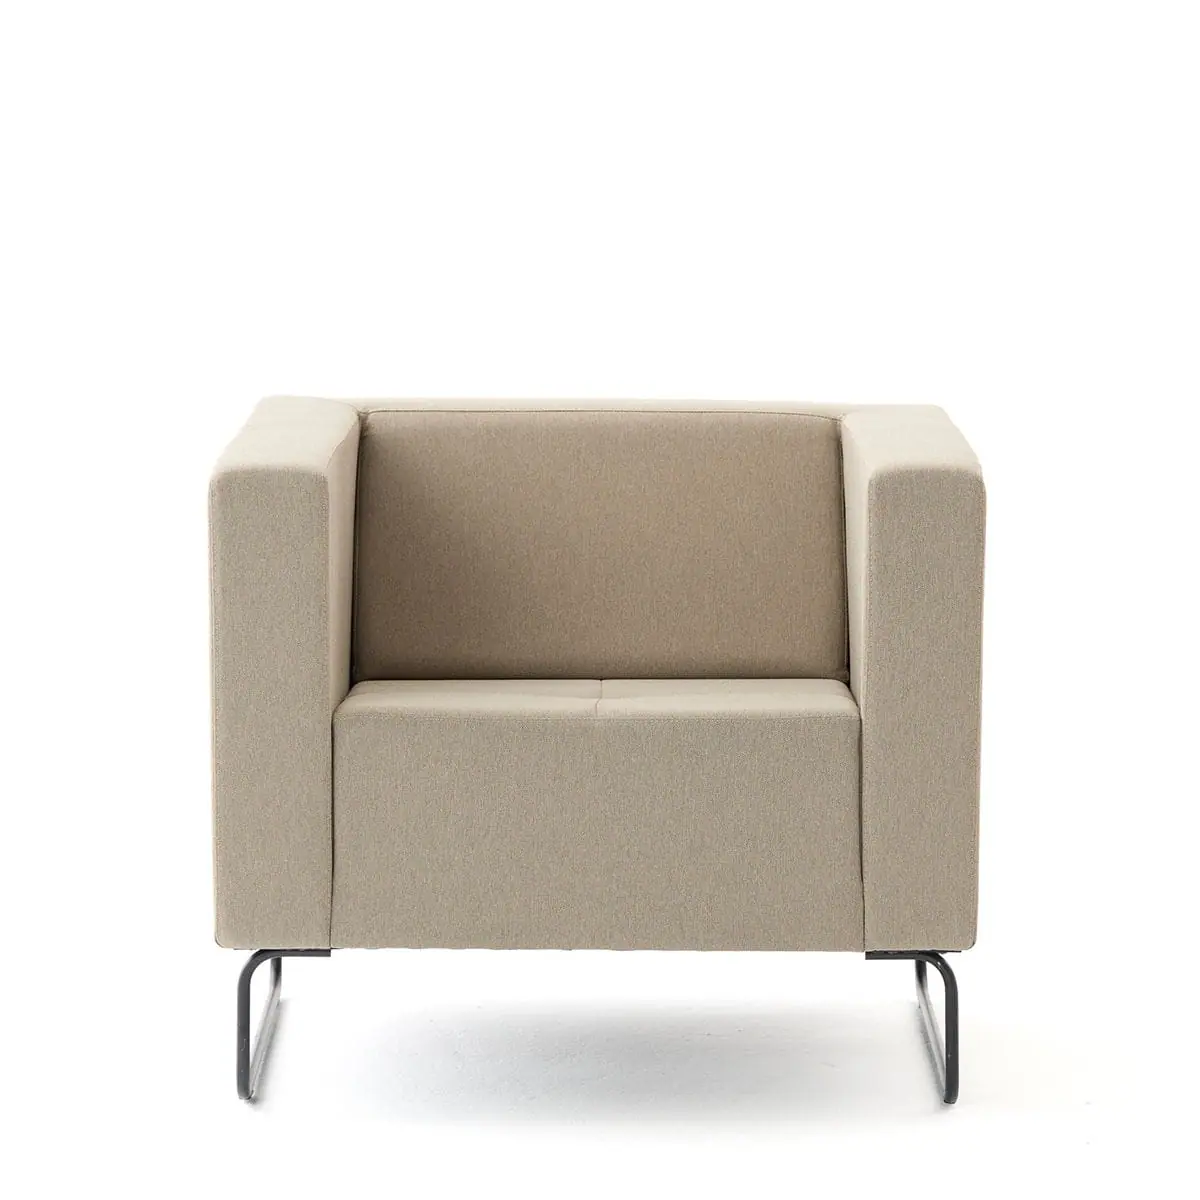 delaoliva-etna-soft-lounge-seating-003